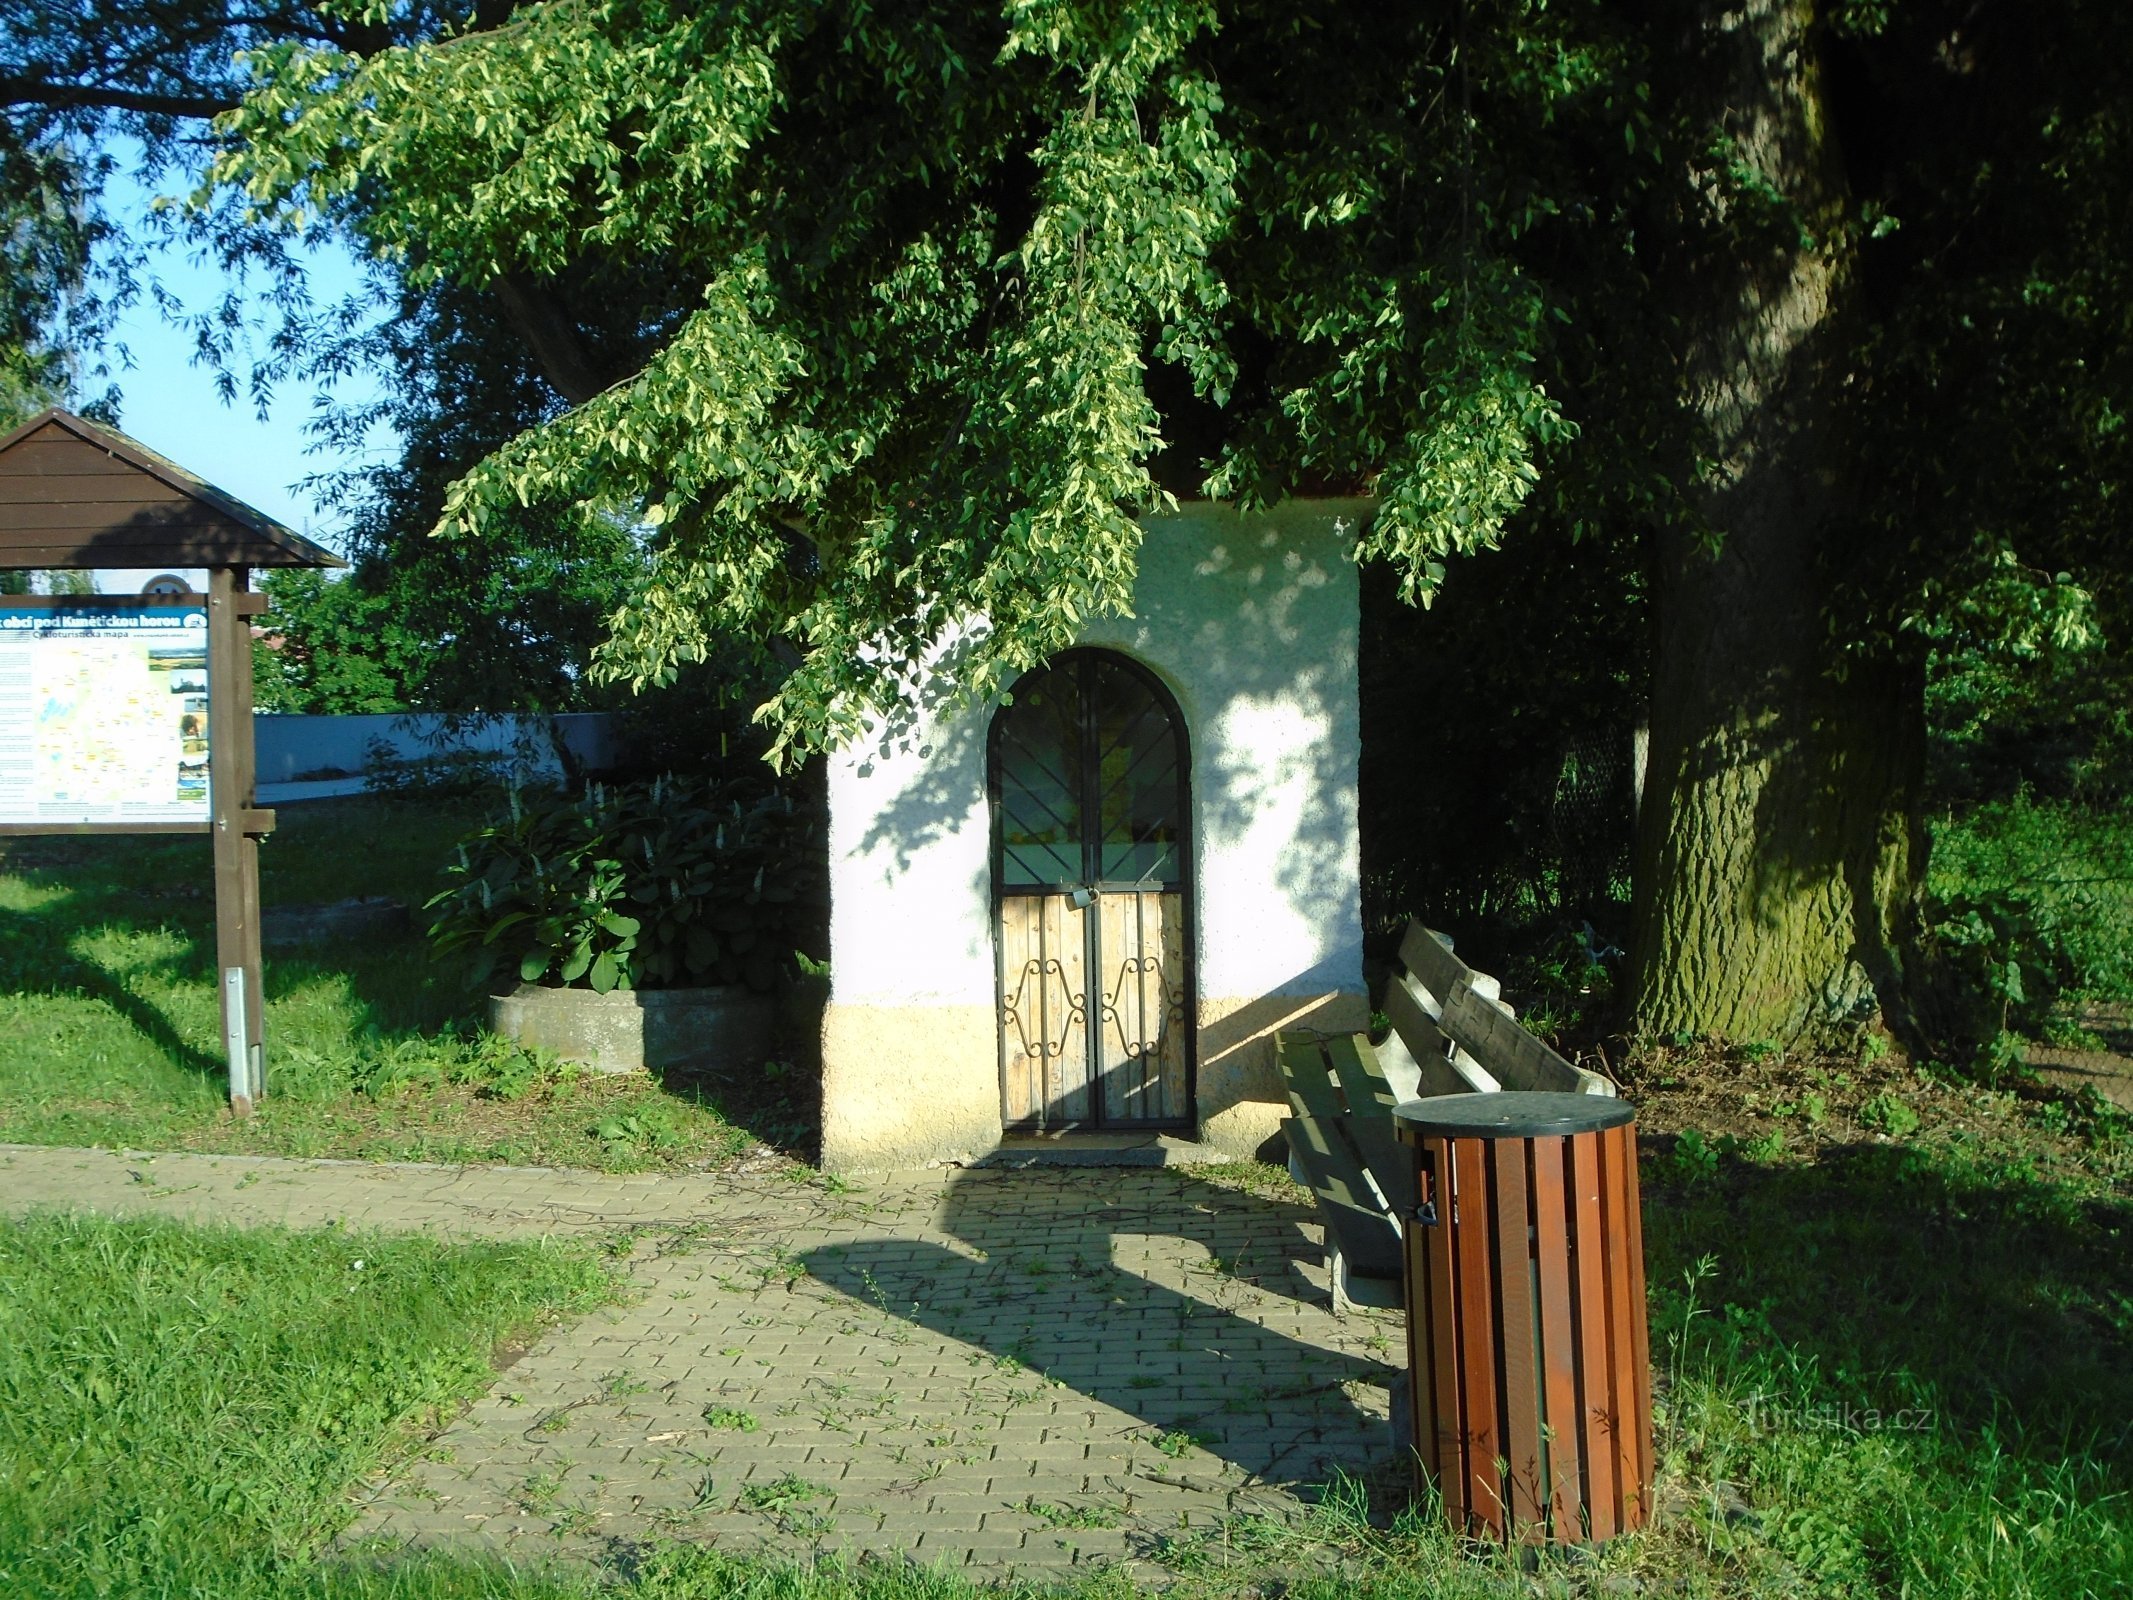 Nhà nguyện gần cây cầu (Podůlšany)